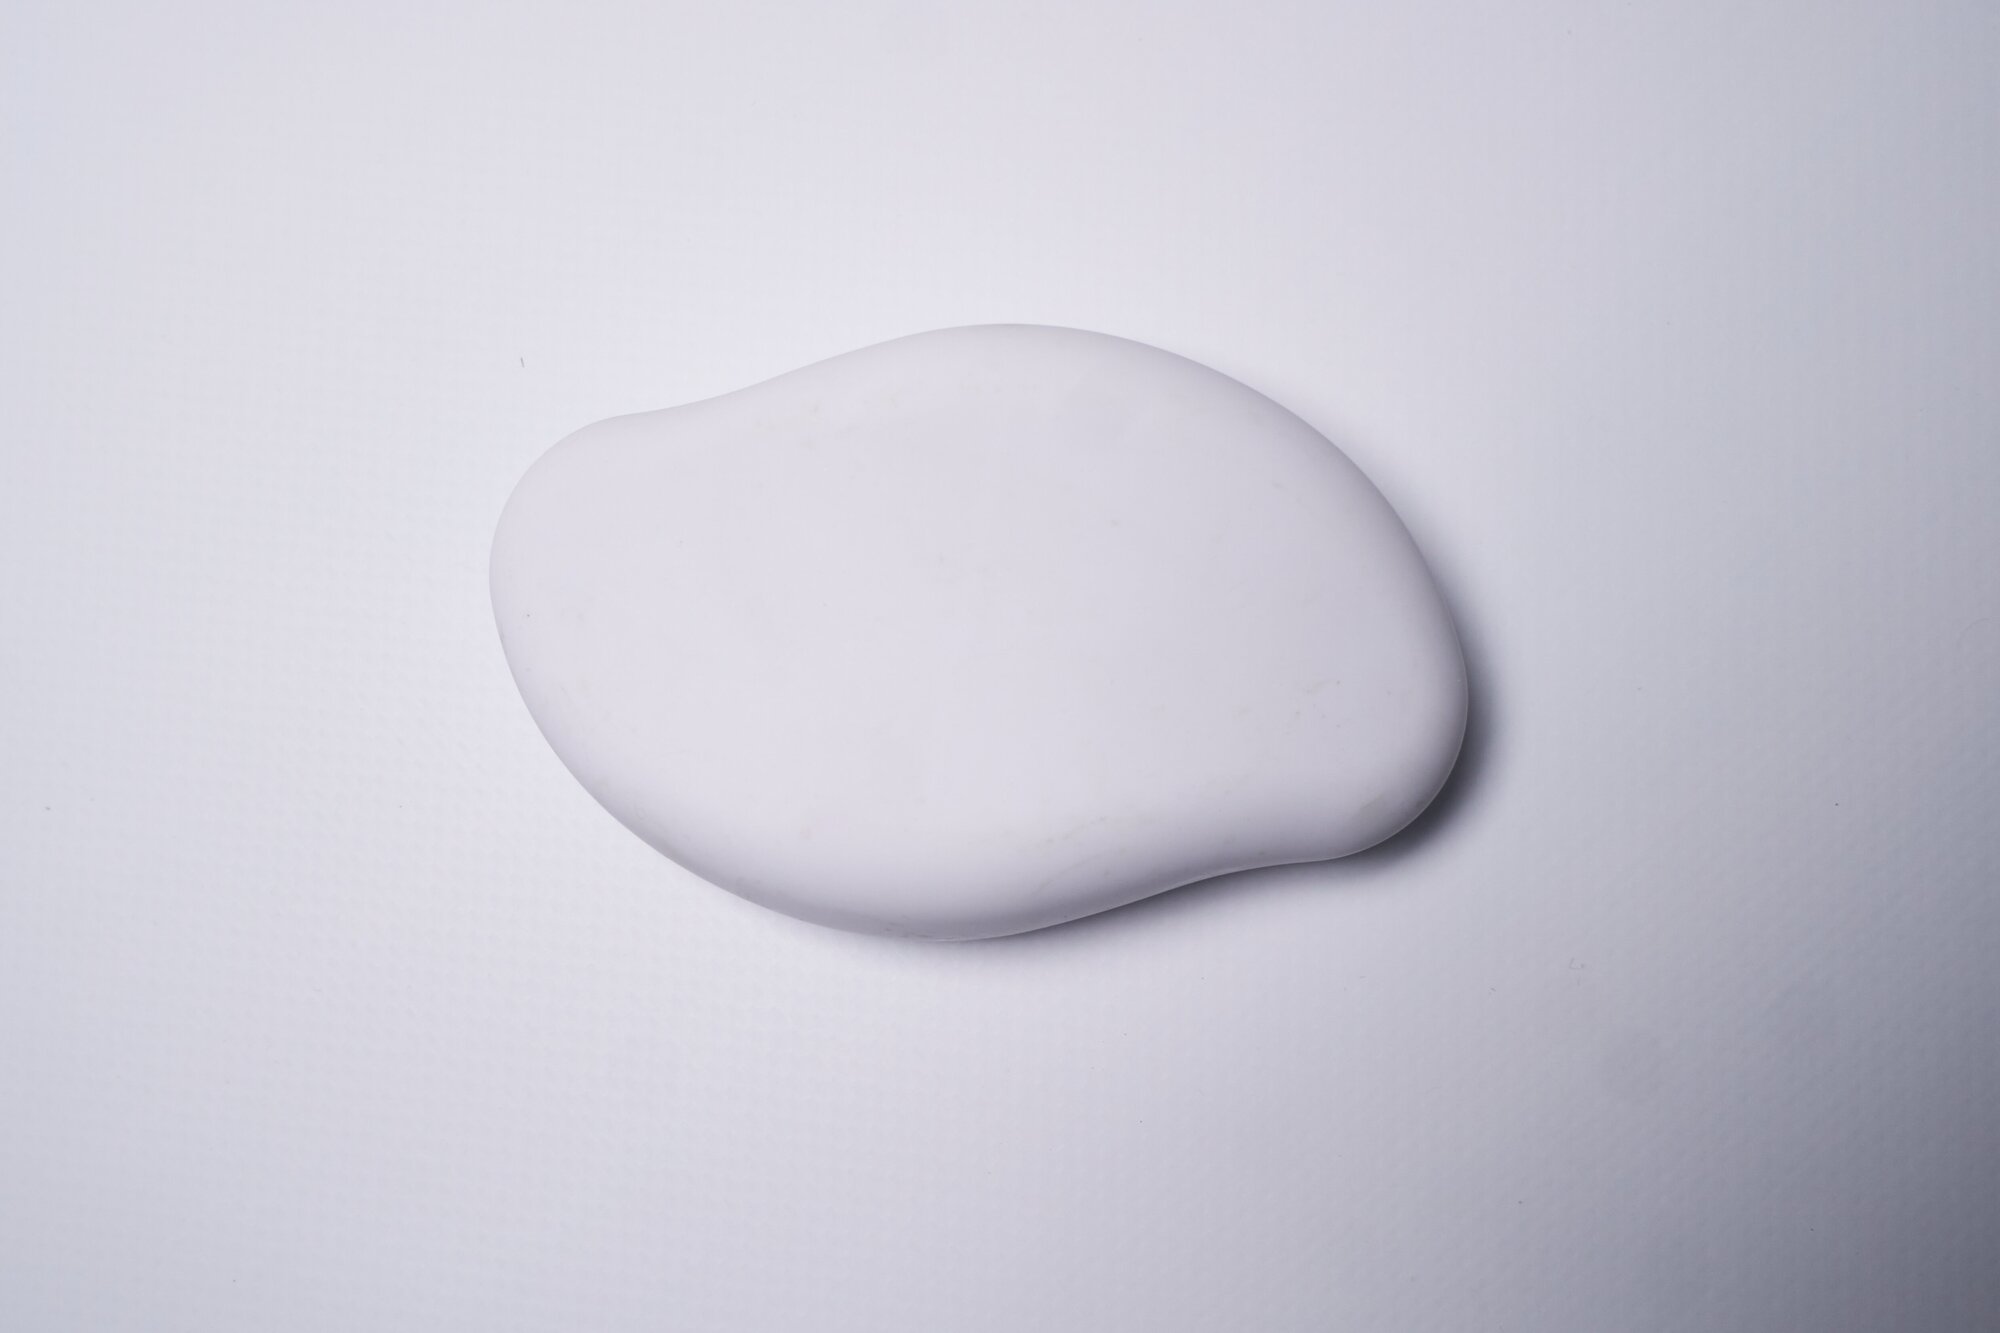 Депилятор ластик для удаления волос и пилинга кожи, кристалл-депилятор с нано-абразивным покрытием, матово-белый - фотография № 2